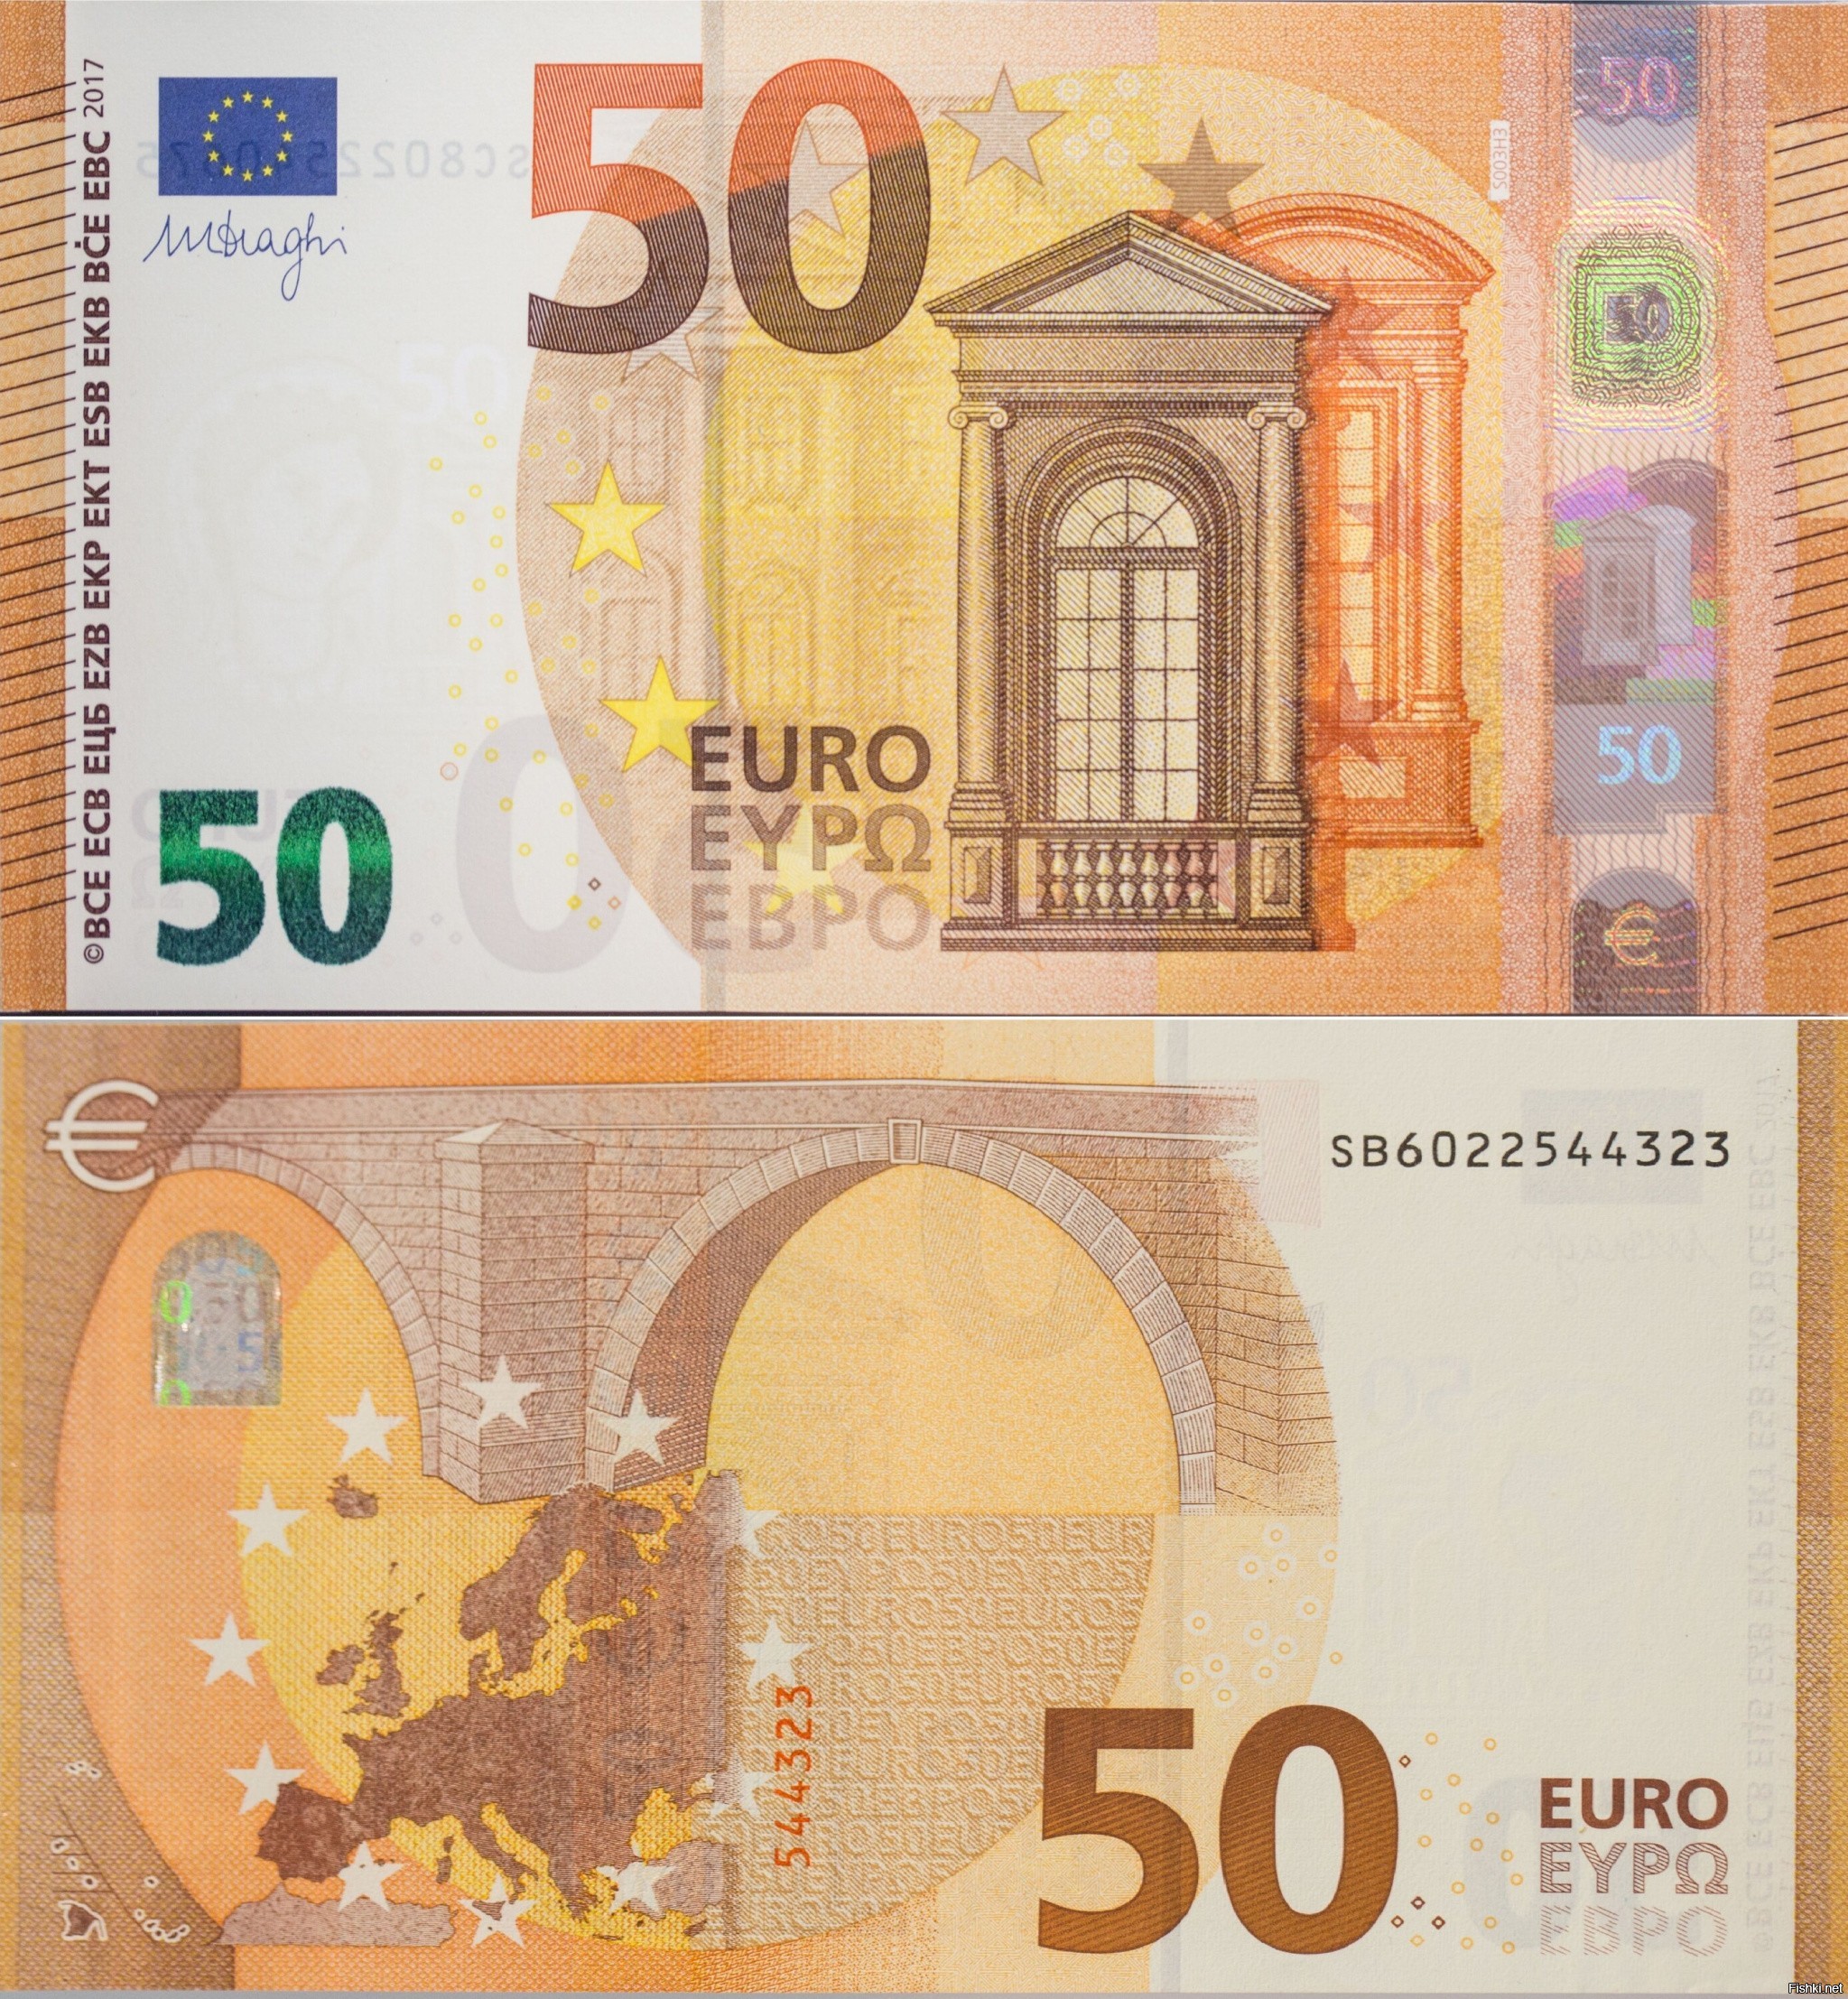 Eu 50. Банкноты 50 евро. Банкноты евро нового образца 50 евро. 50 Евро купюра 2017. Как выглядит банкнота 50 евро.